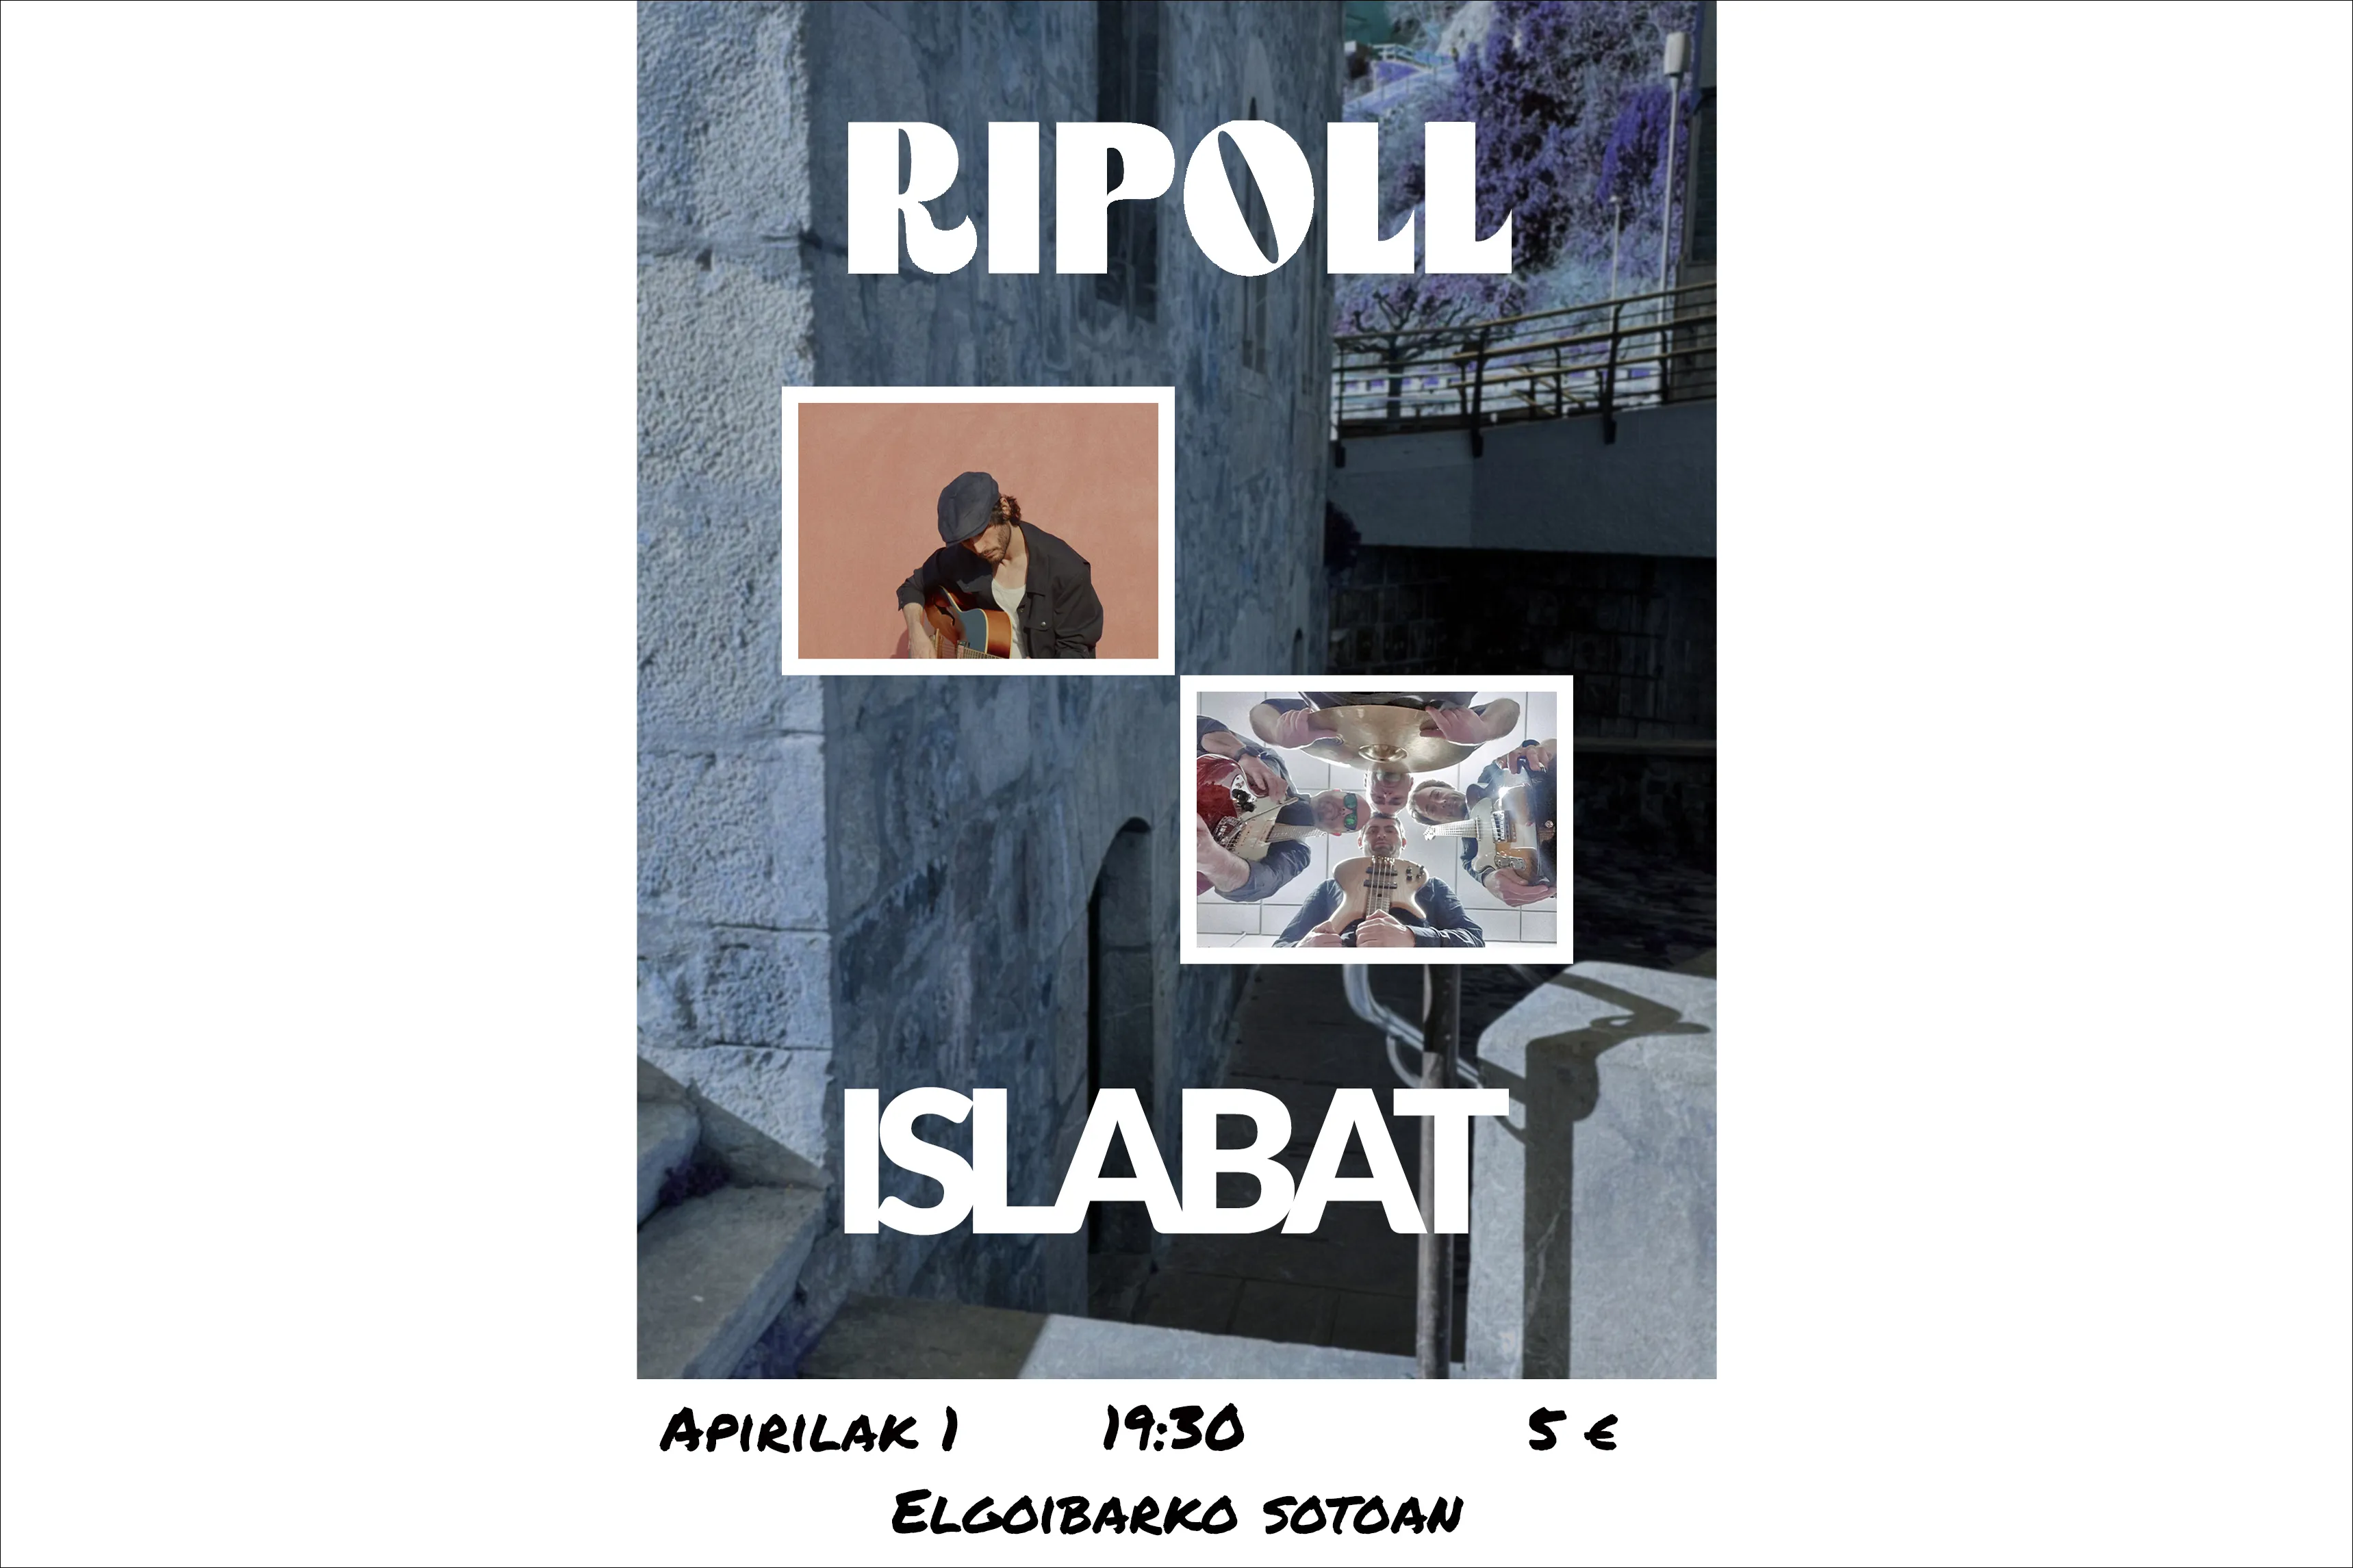 Ripoll + Islabat